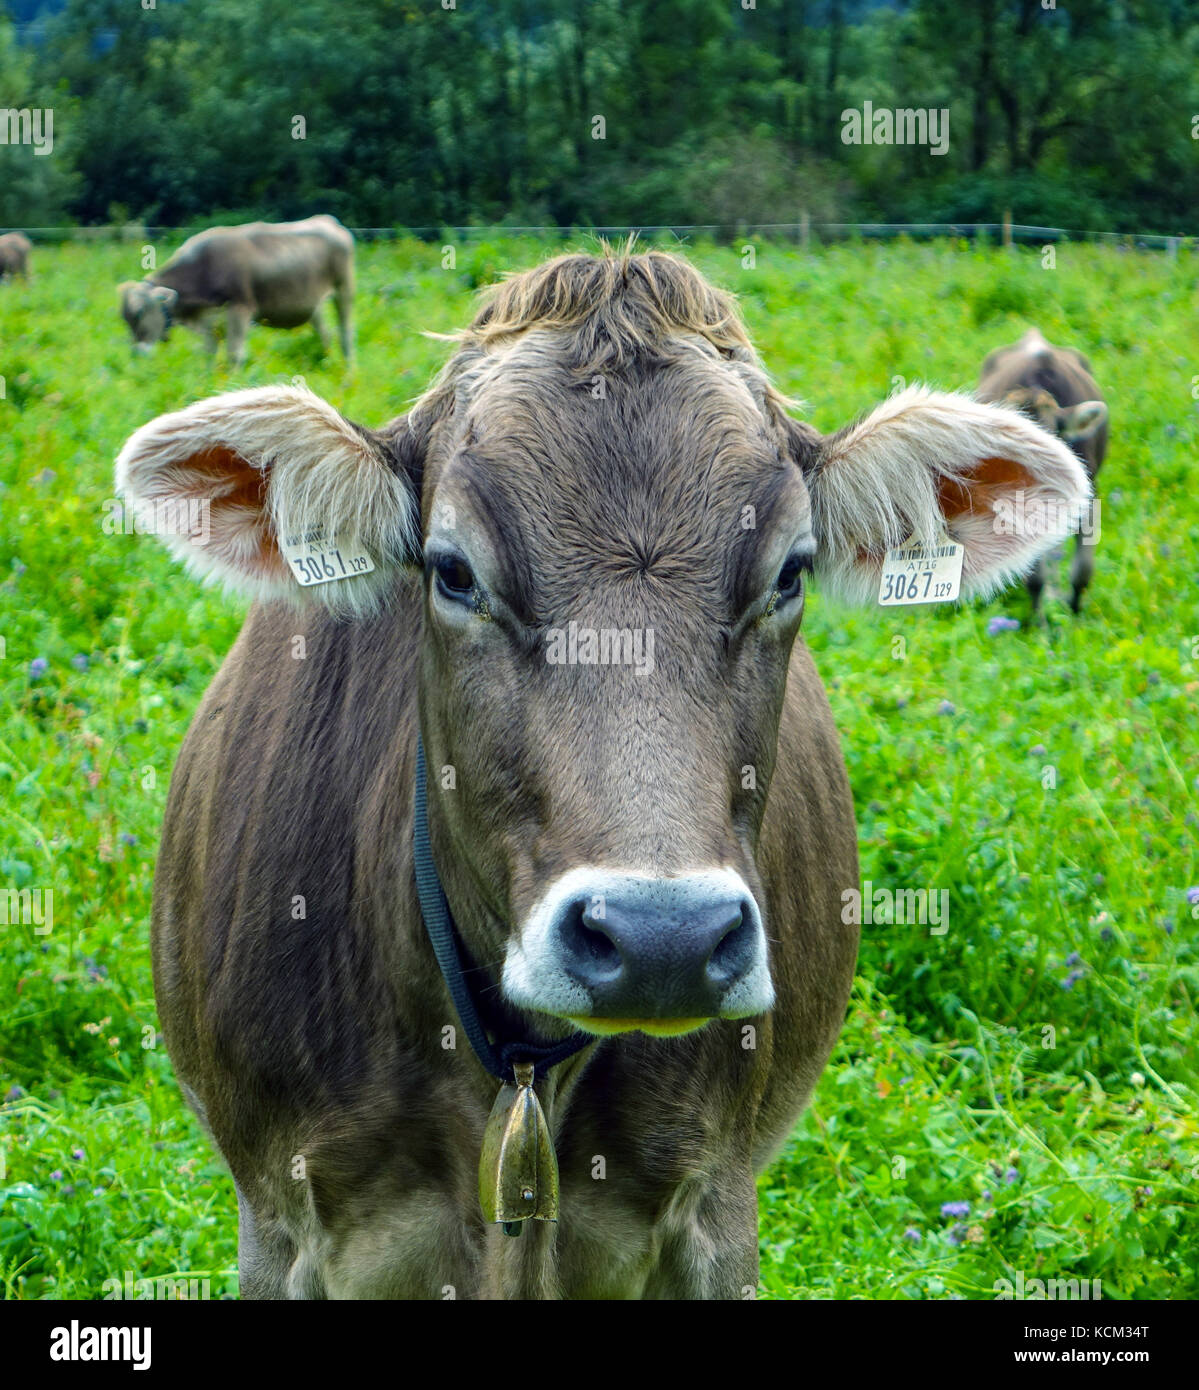 Vache brune avec l'oreille looking at camera, Autriche Banque D'Images